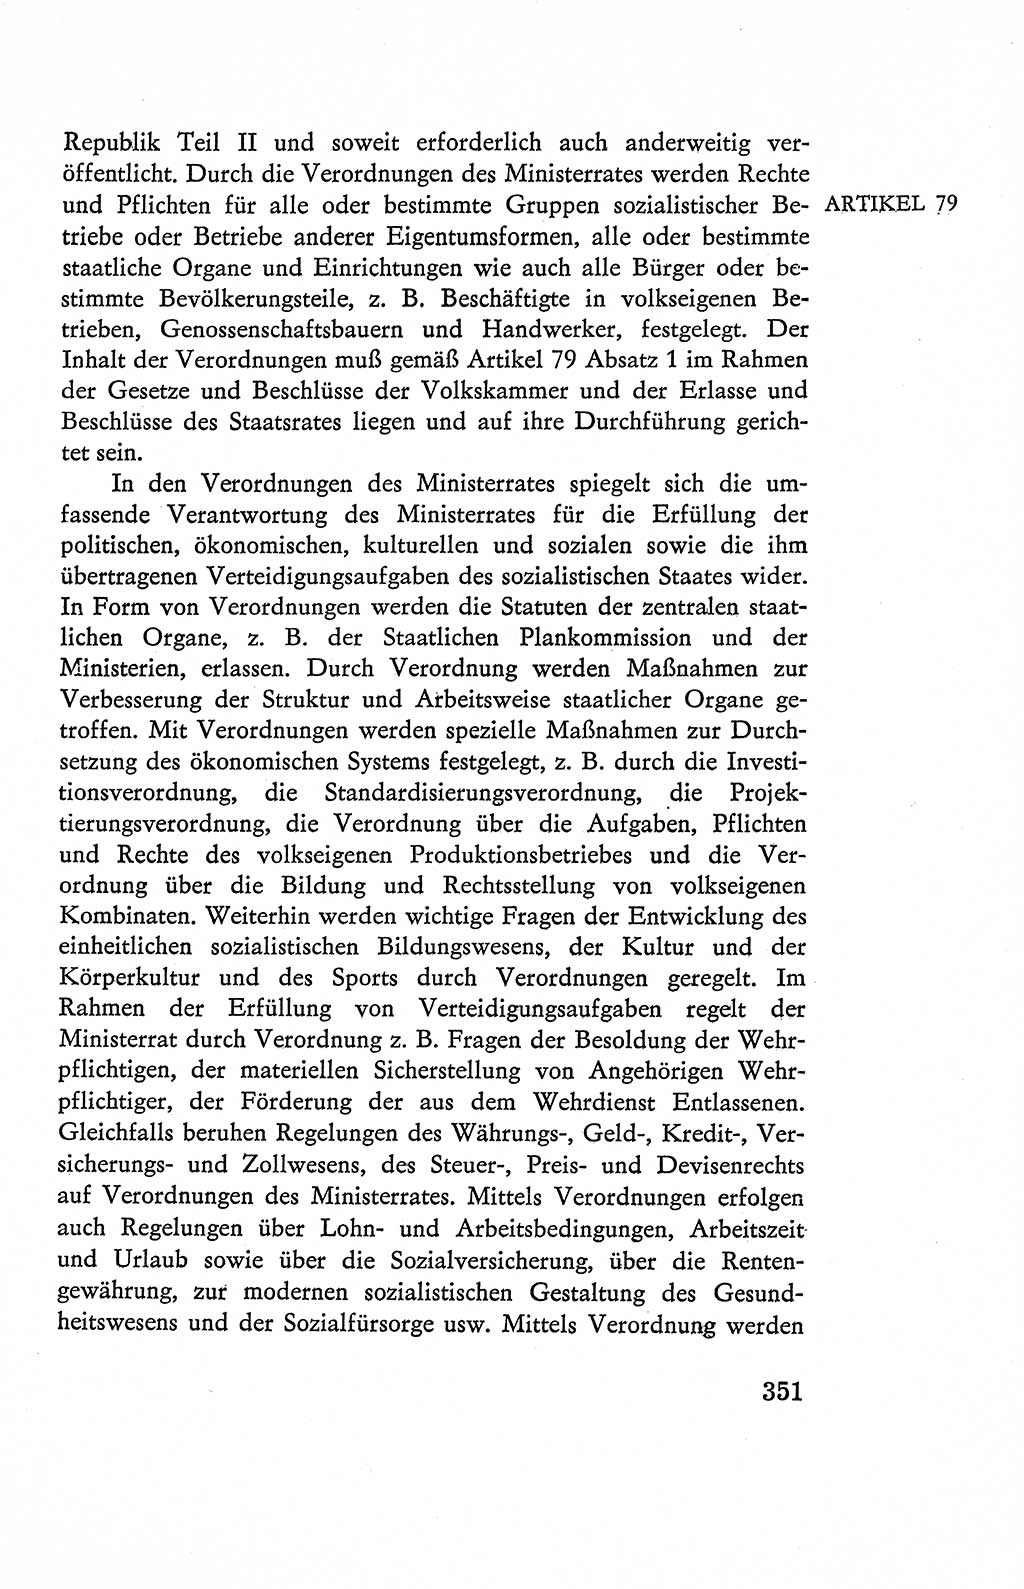 Verfassung der Deutschen Demokratischen Republik (DDR), Dokumente, Kommentar 1969, Band 2, Seite 351 (Verf. DDR Dok. Komm. 1969, Bd. 2, S. 351)